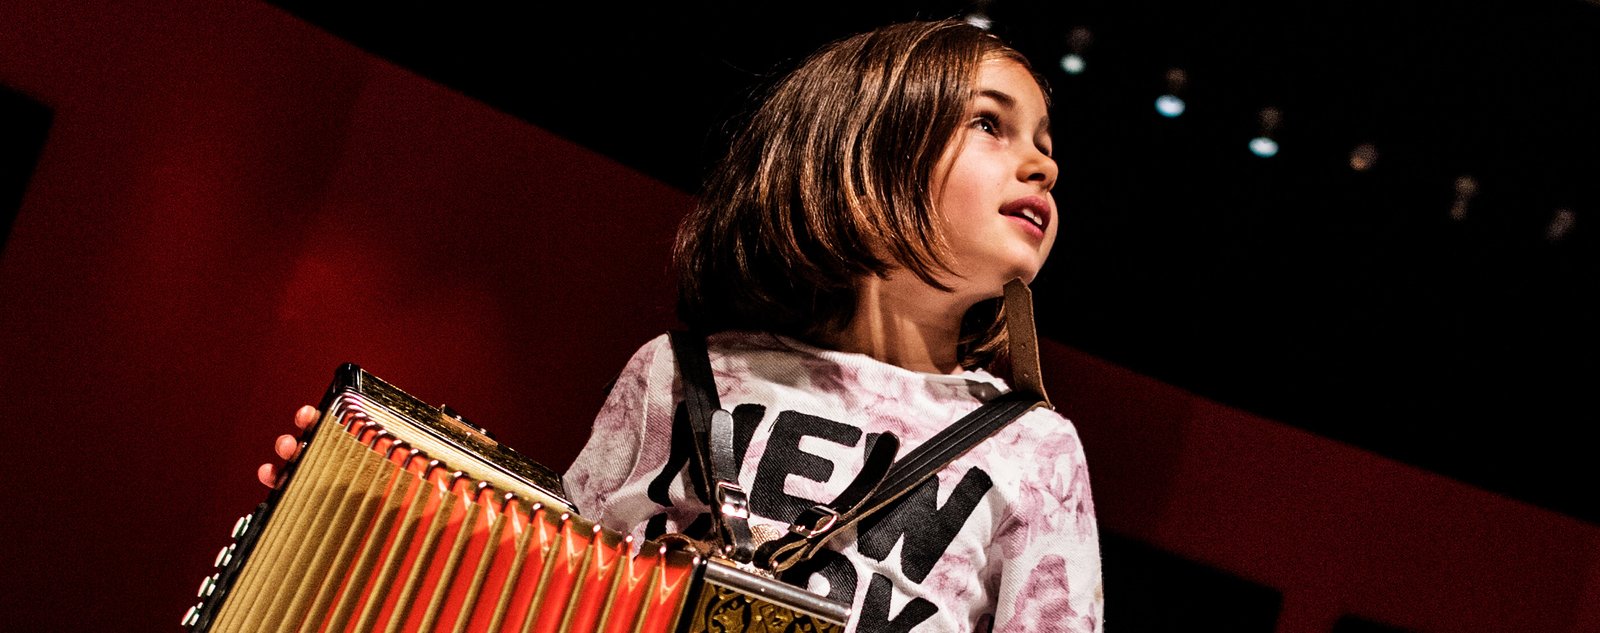 Photographie d'une petite fille avec un accordéon